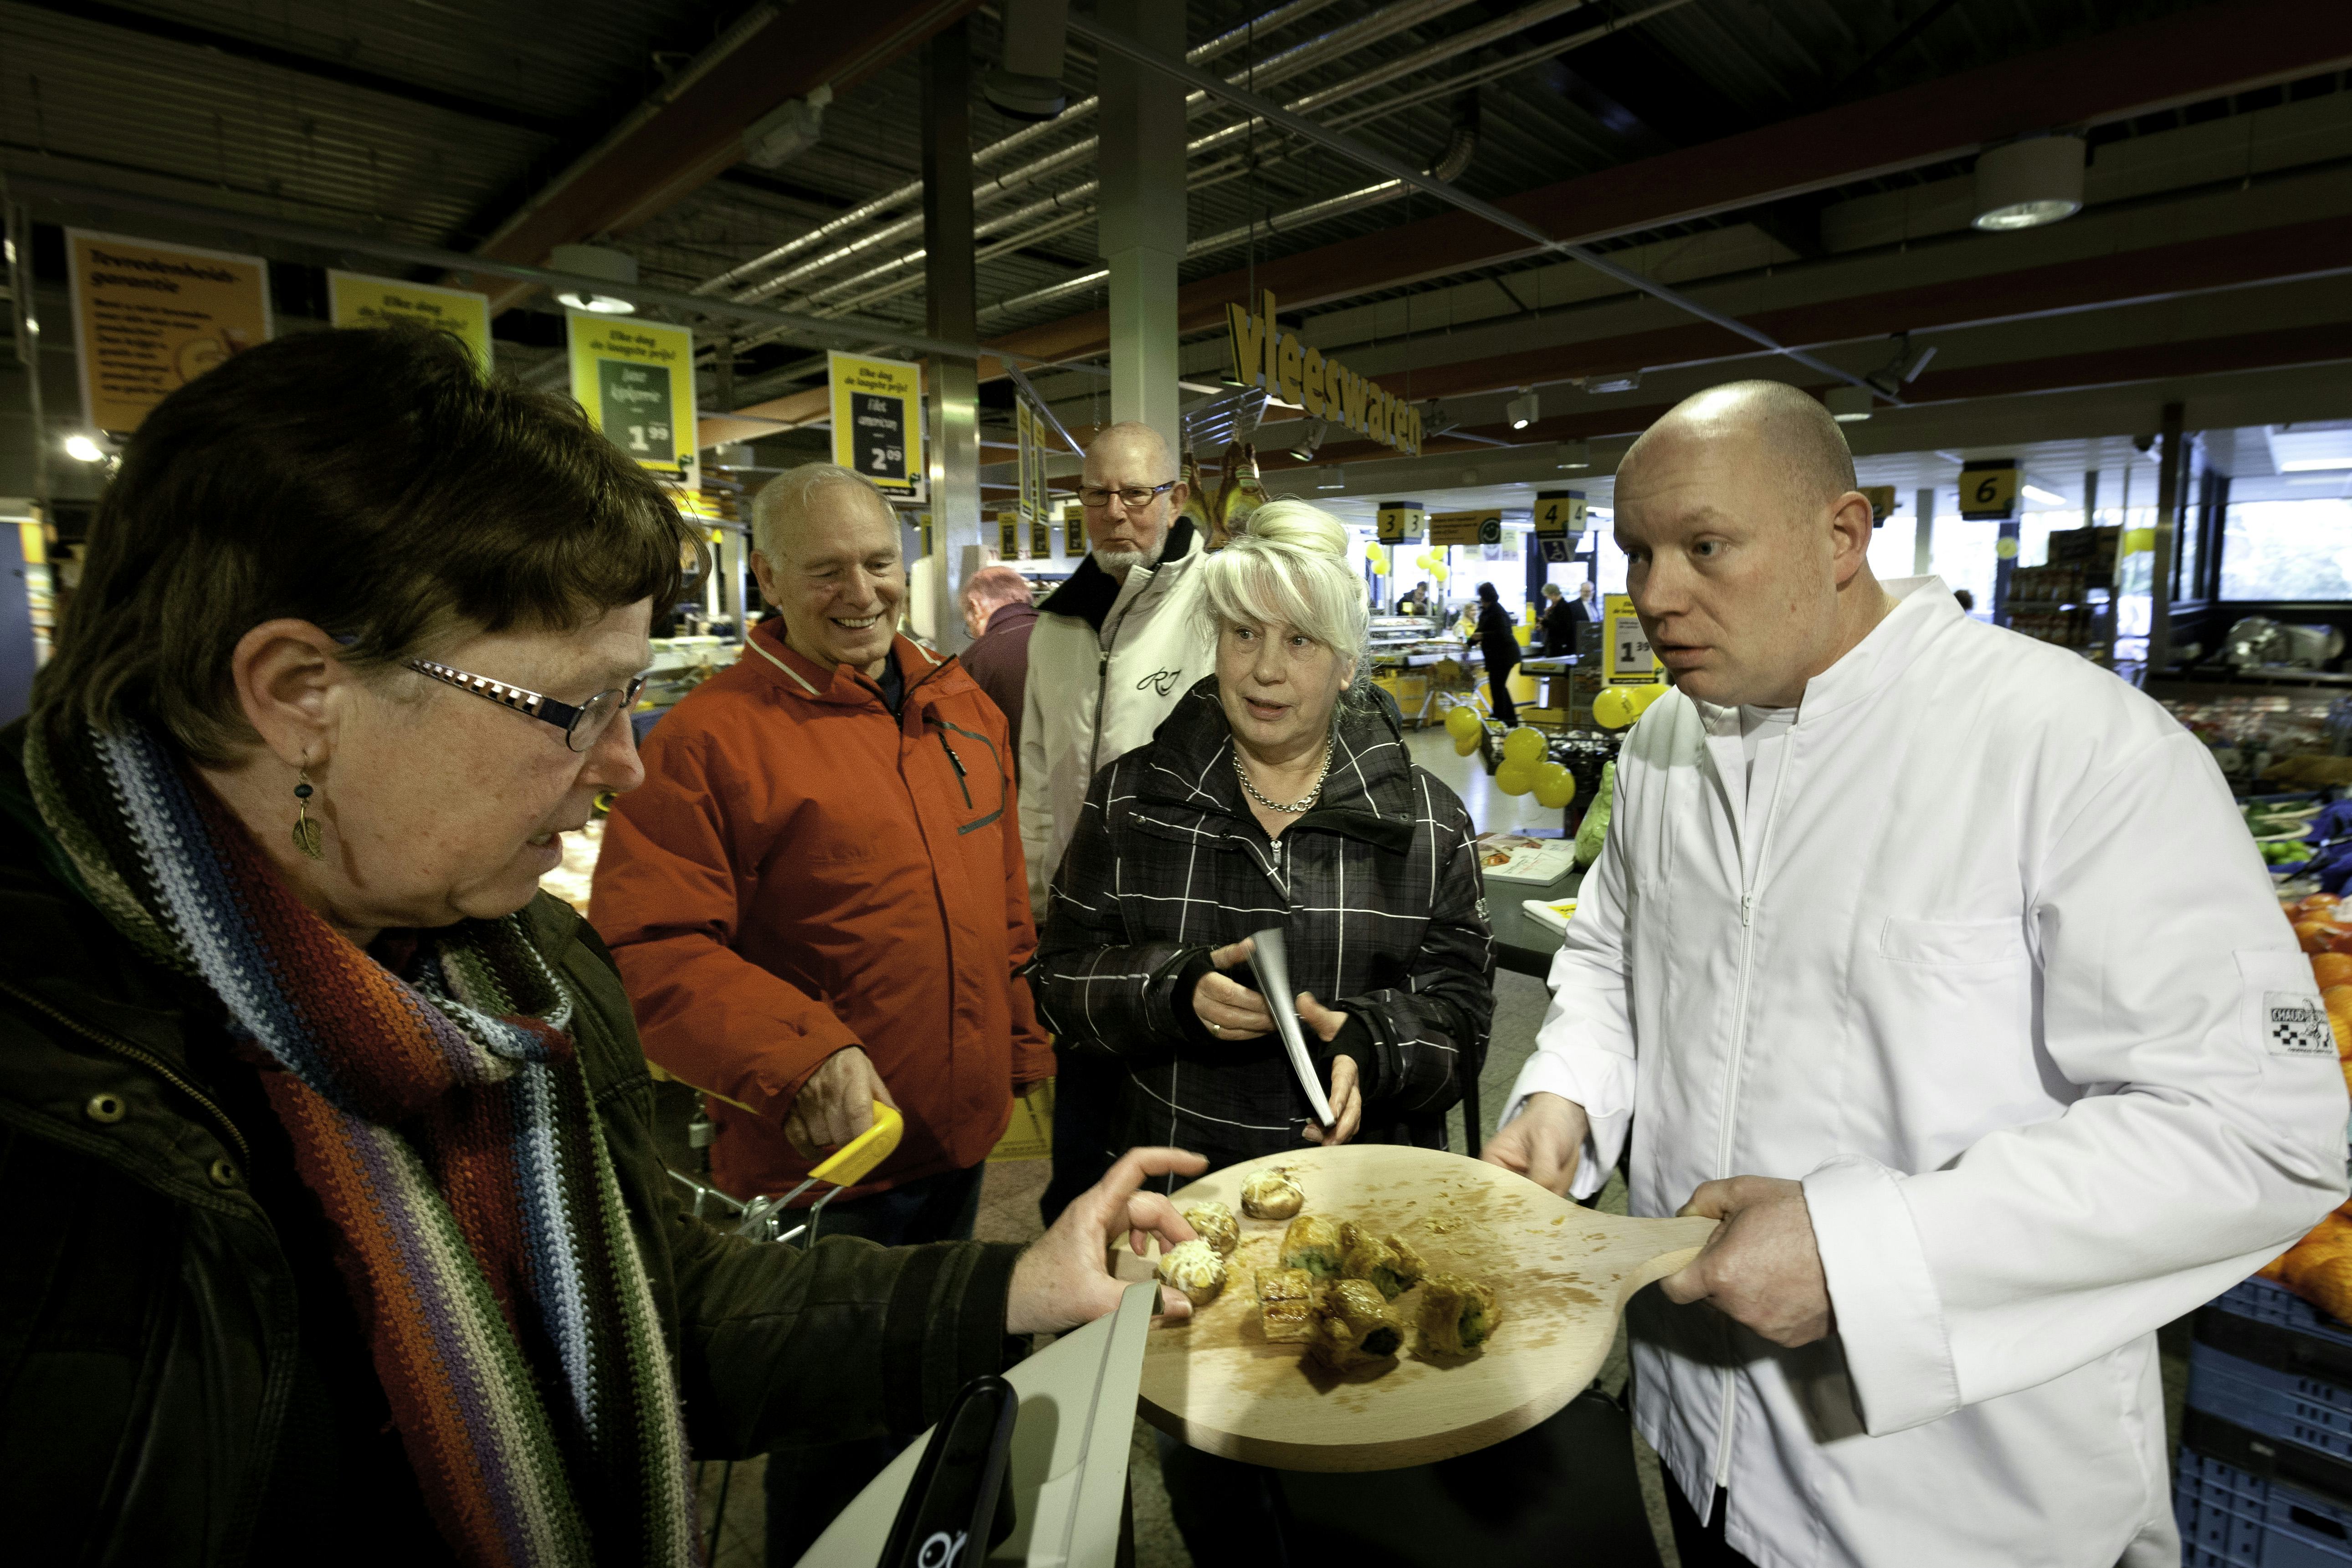 Cafetaria's zouden, net als supermarkten, vaker proeverijen moeten organiseren, adviseert Beckers
foto:Jan Willem van Vliet